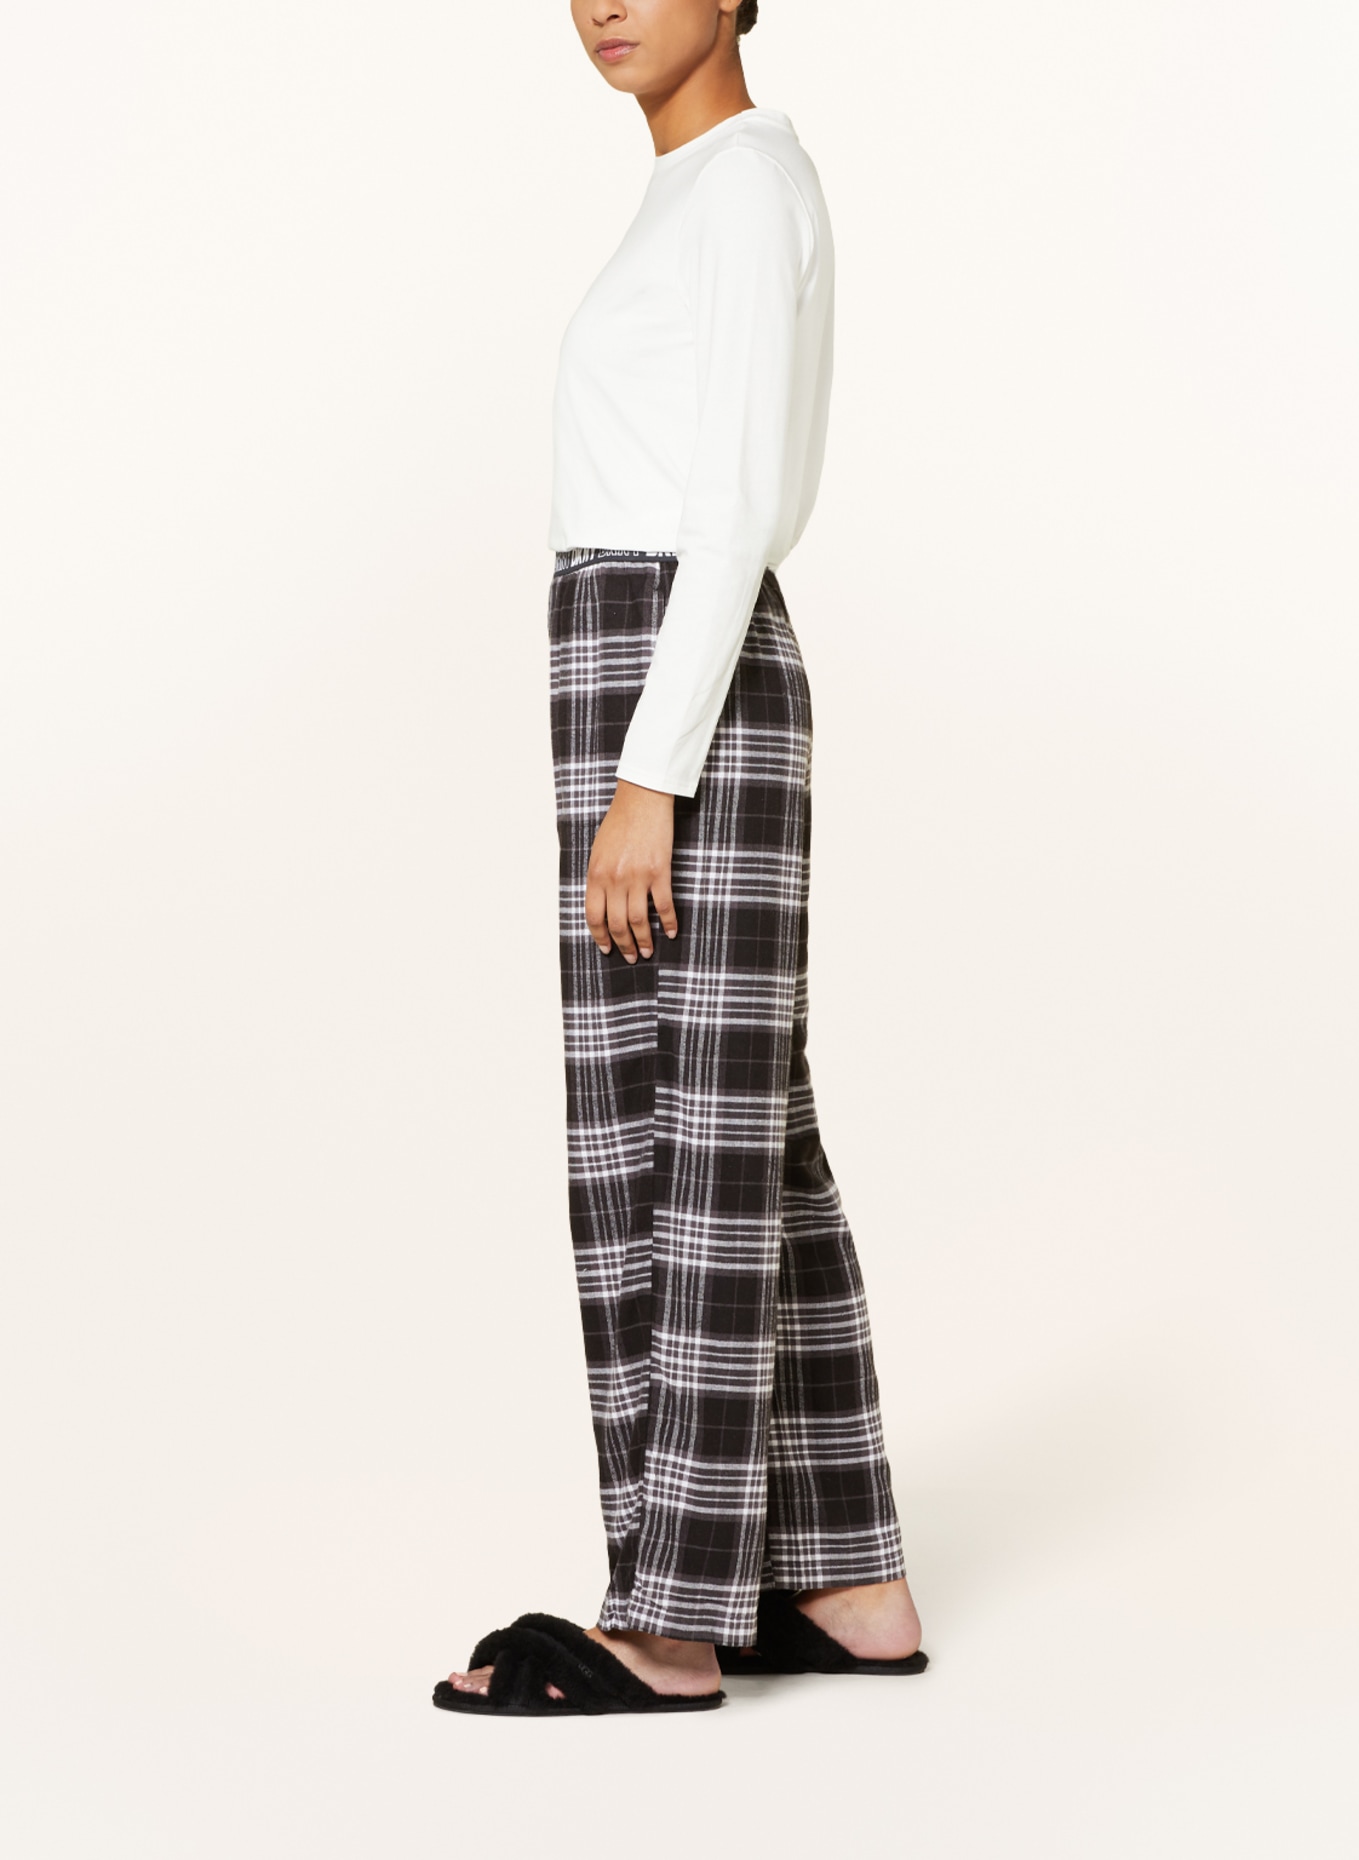 DKNY Pajama pants in flannel, Color: BLACK/ DARK GRAY/ WHITE (Image 4)